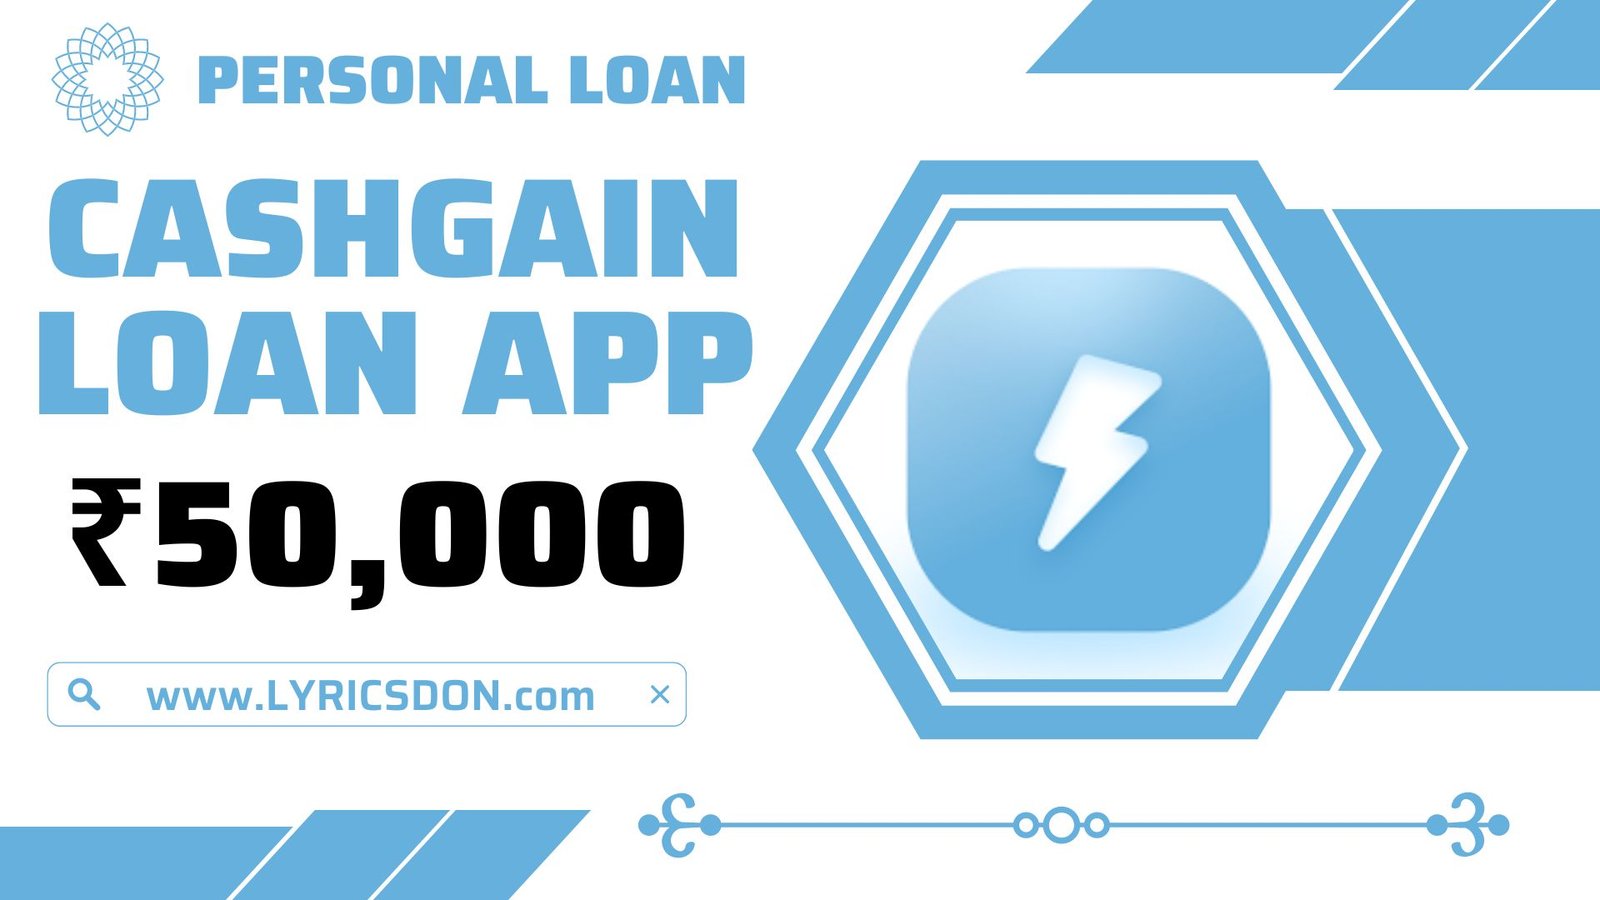 CashGain Loan App Loan Amount